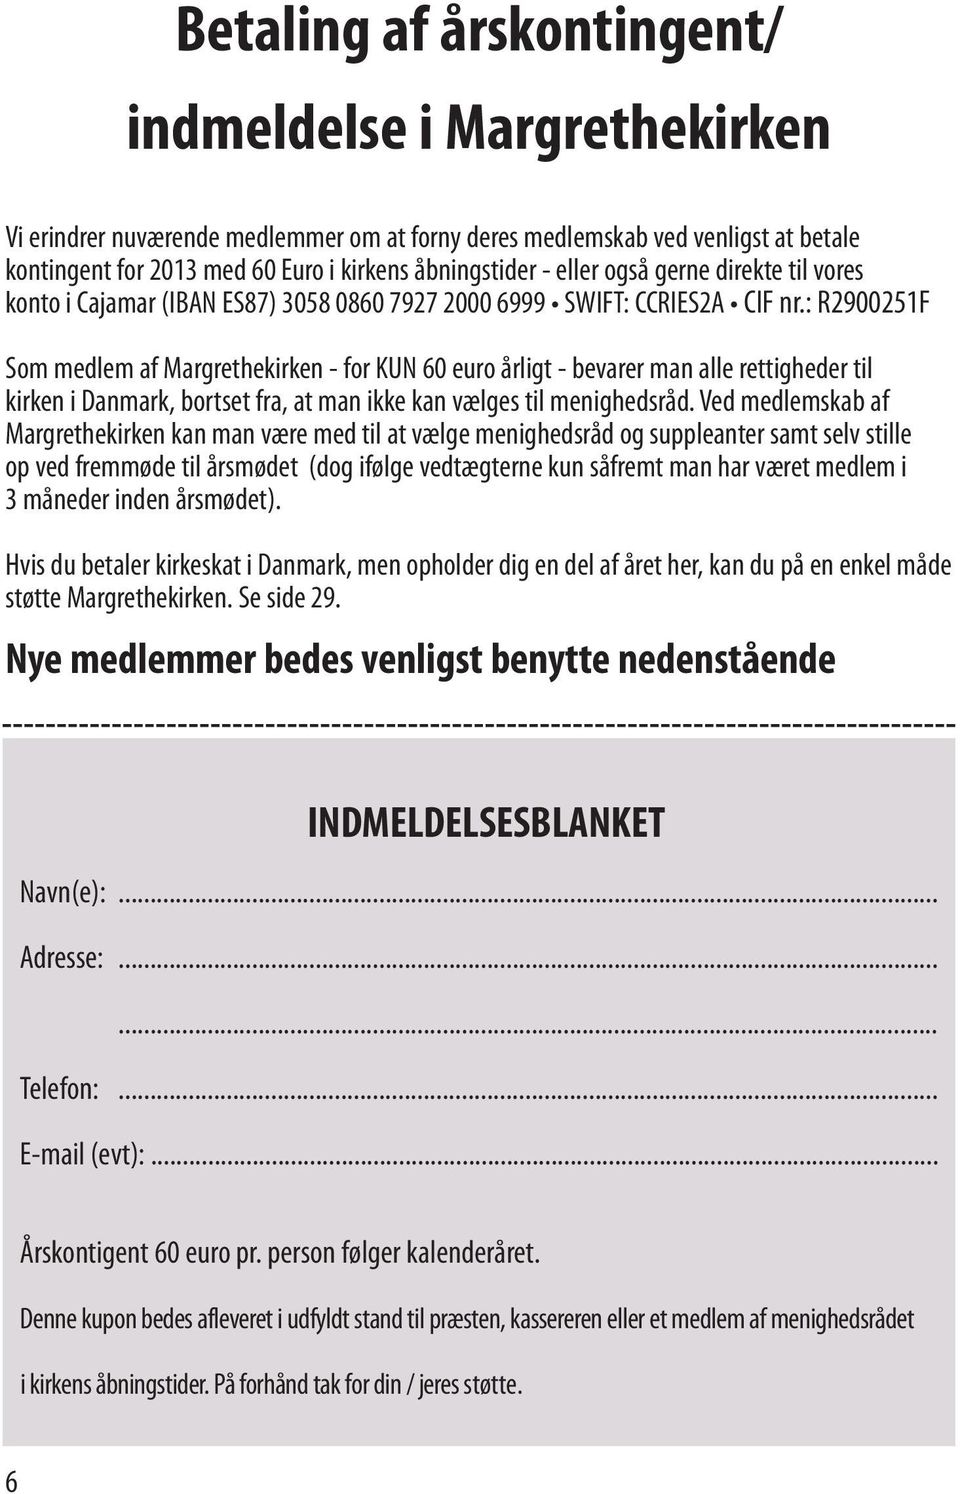 : R2900251F Som medlem af Margrethekirken - for KUN 60 euro årligt - bevarer man alle rettigheder til kirken i Danmark, bortset fra, at man ikke kan vælges til menighedsråd.